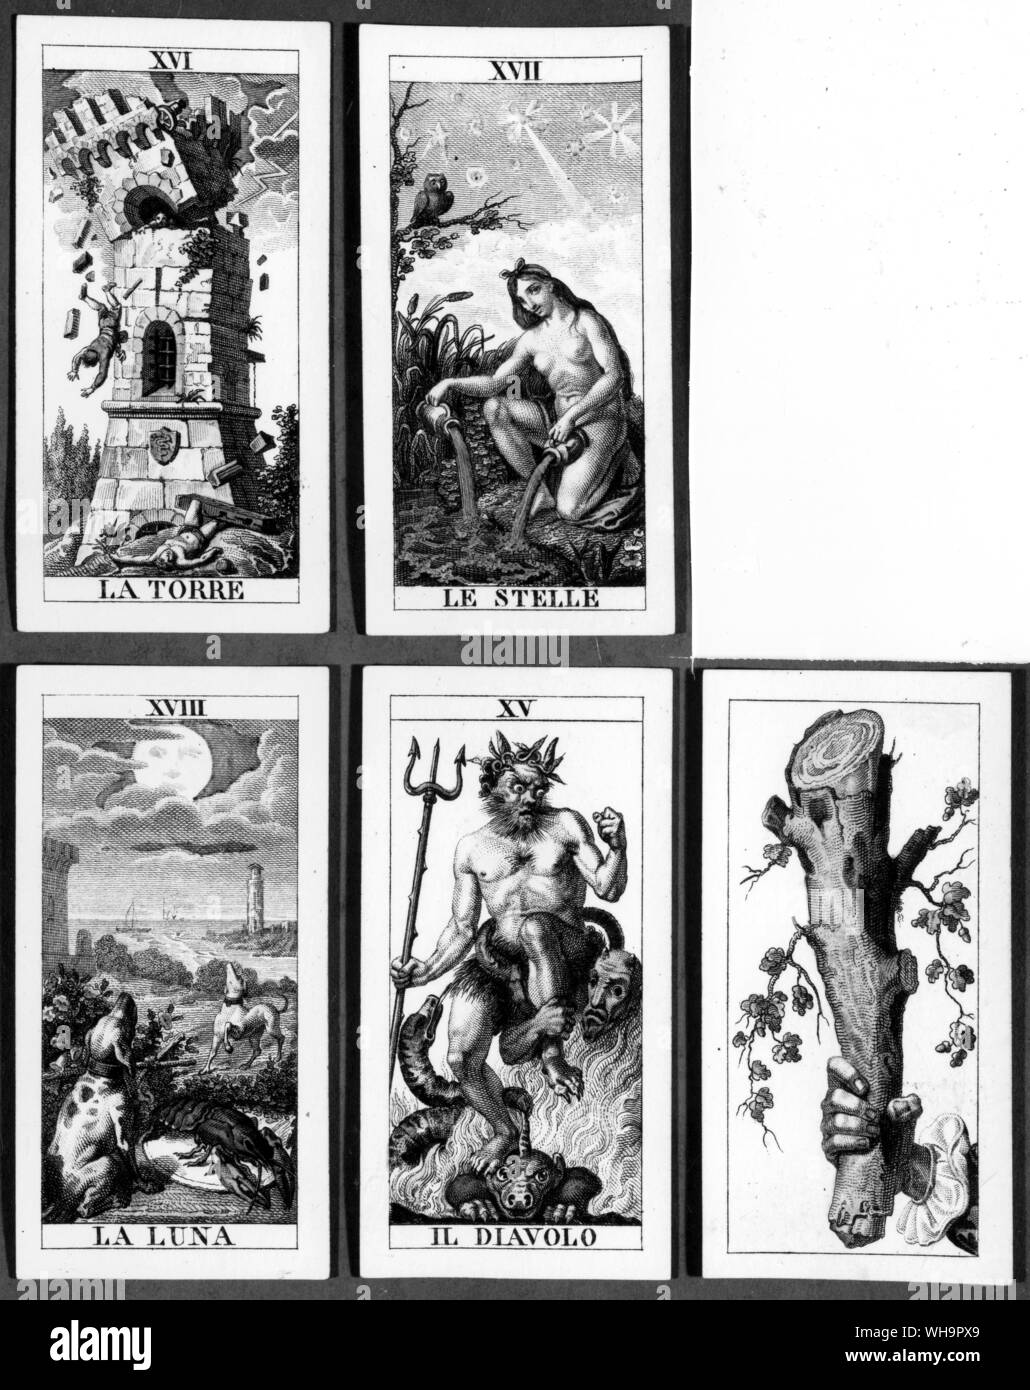 Cartas del Tarot - Il diavolo (parte central inferior); Le Stelle, la  estrella italiana del siglo XVIII en un pack (parte superior derecha); y de la  Luna, una versión de la Luna,